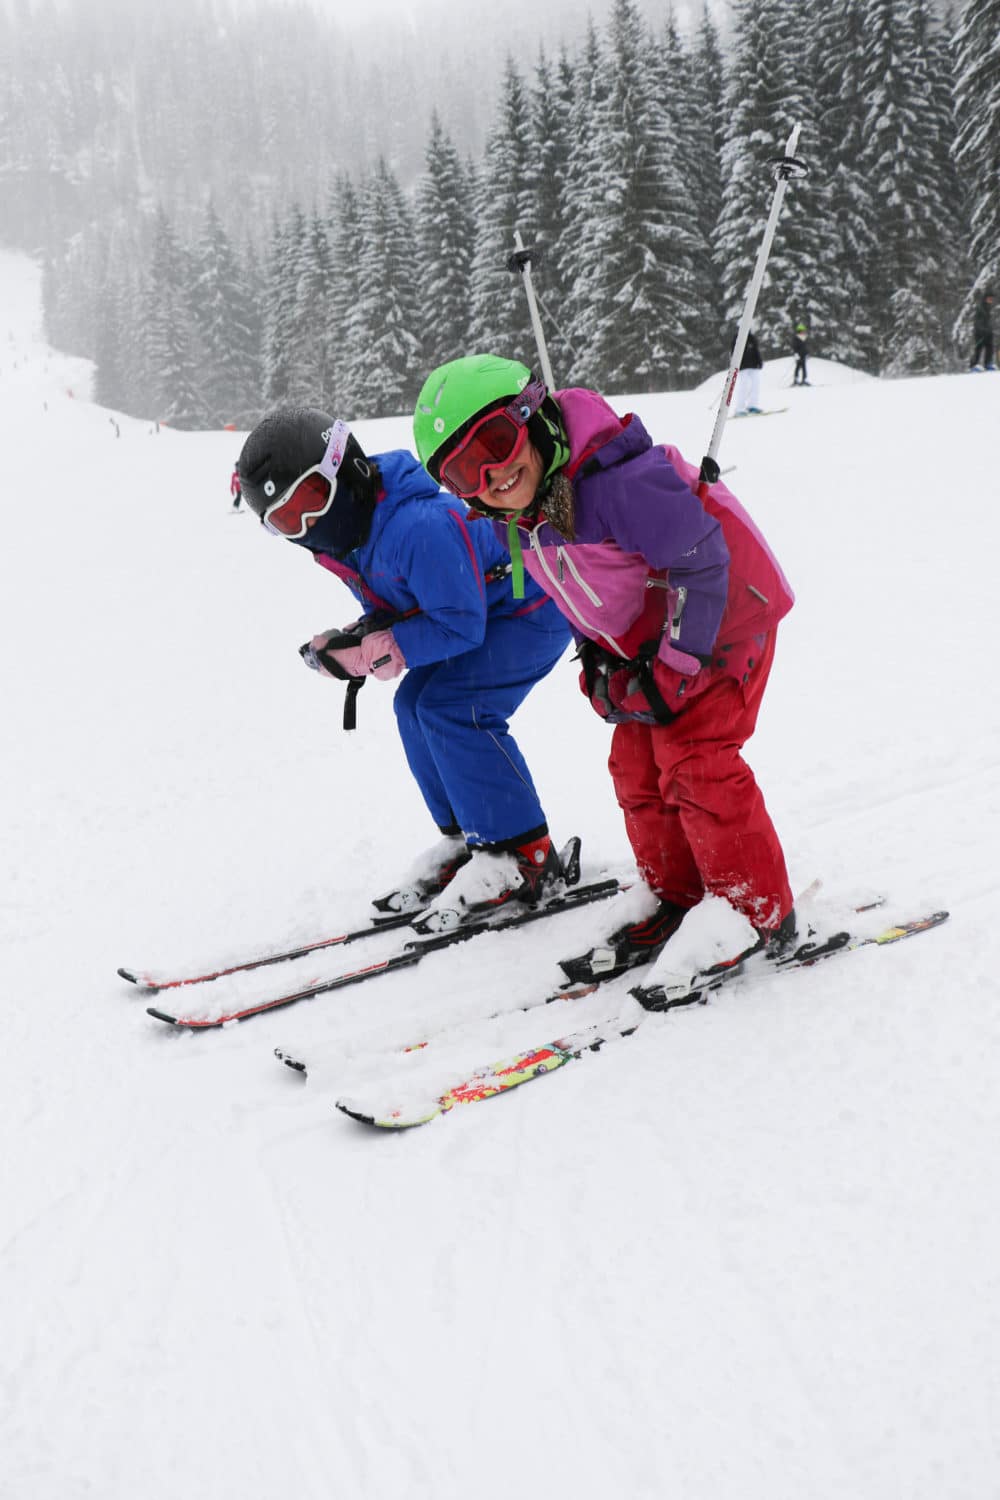 Children posing in ski race position